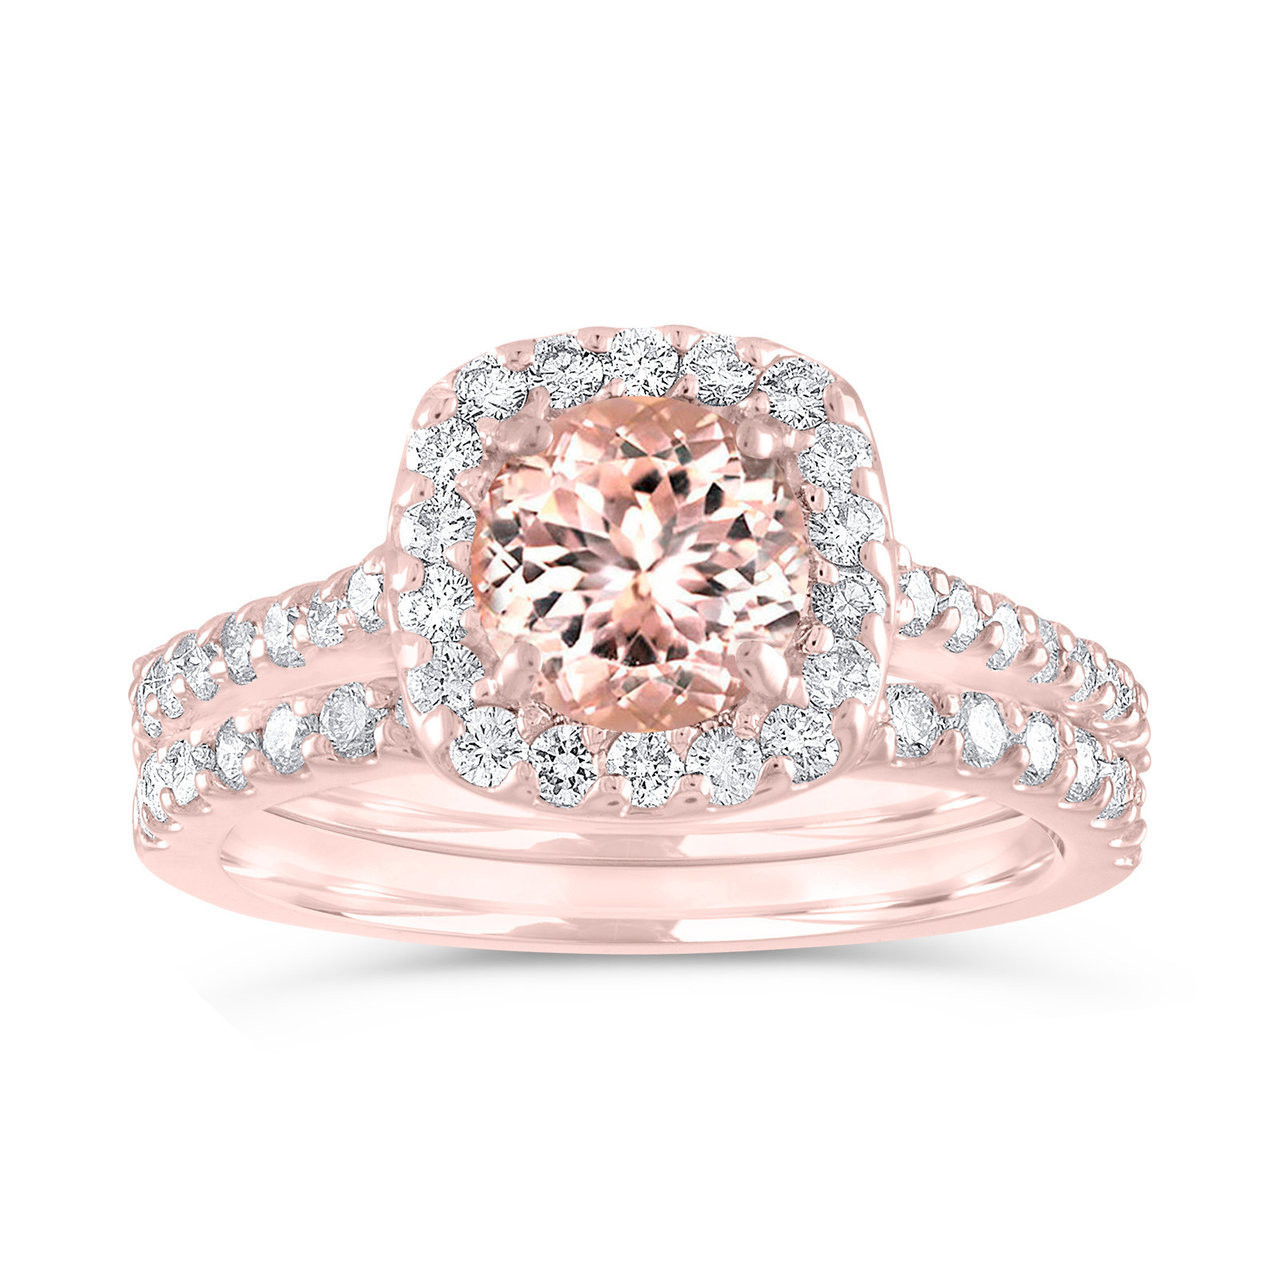 Pink Wedding Ring Set
 Morganite Engagement Ring Set Rose Gold Pink Morganite